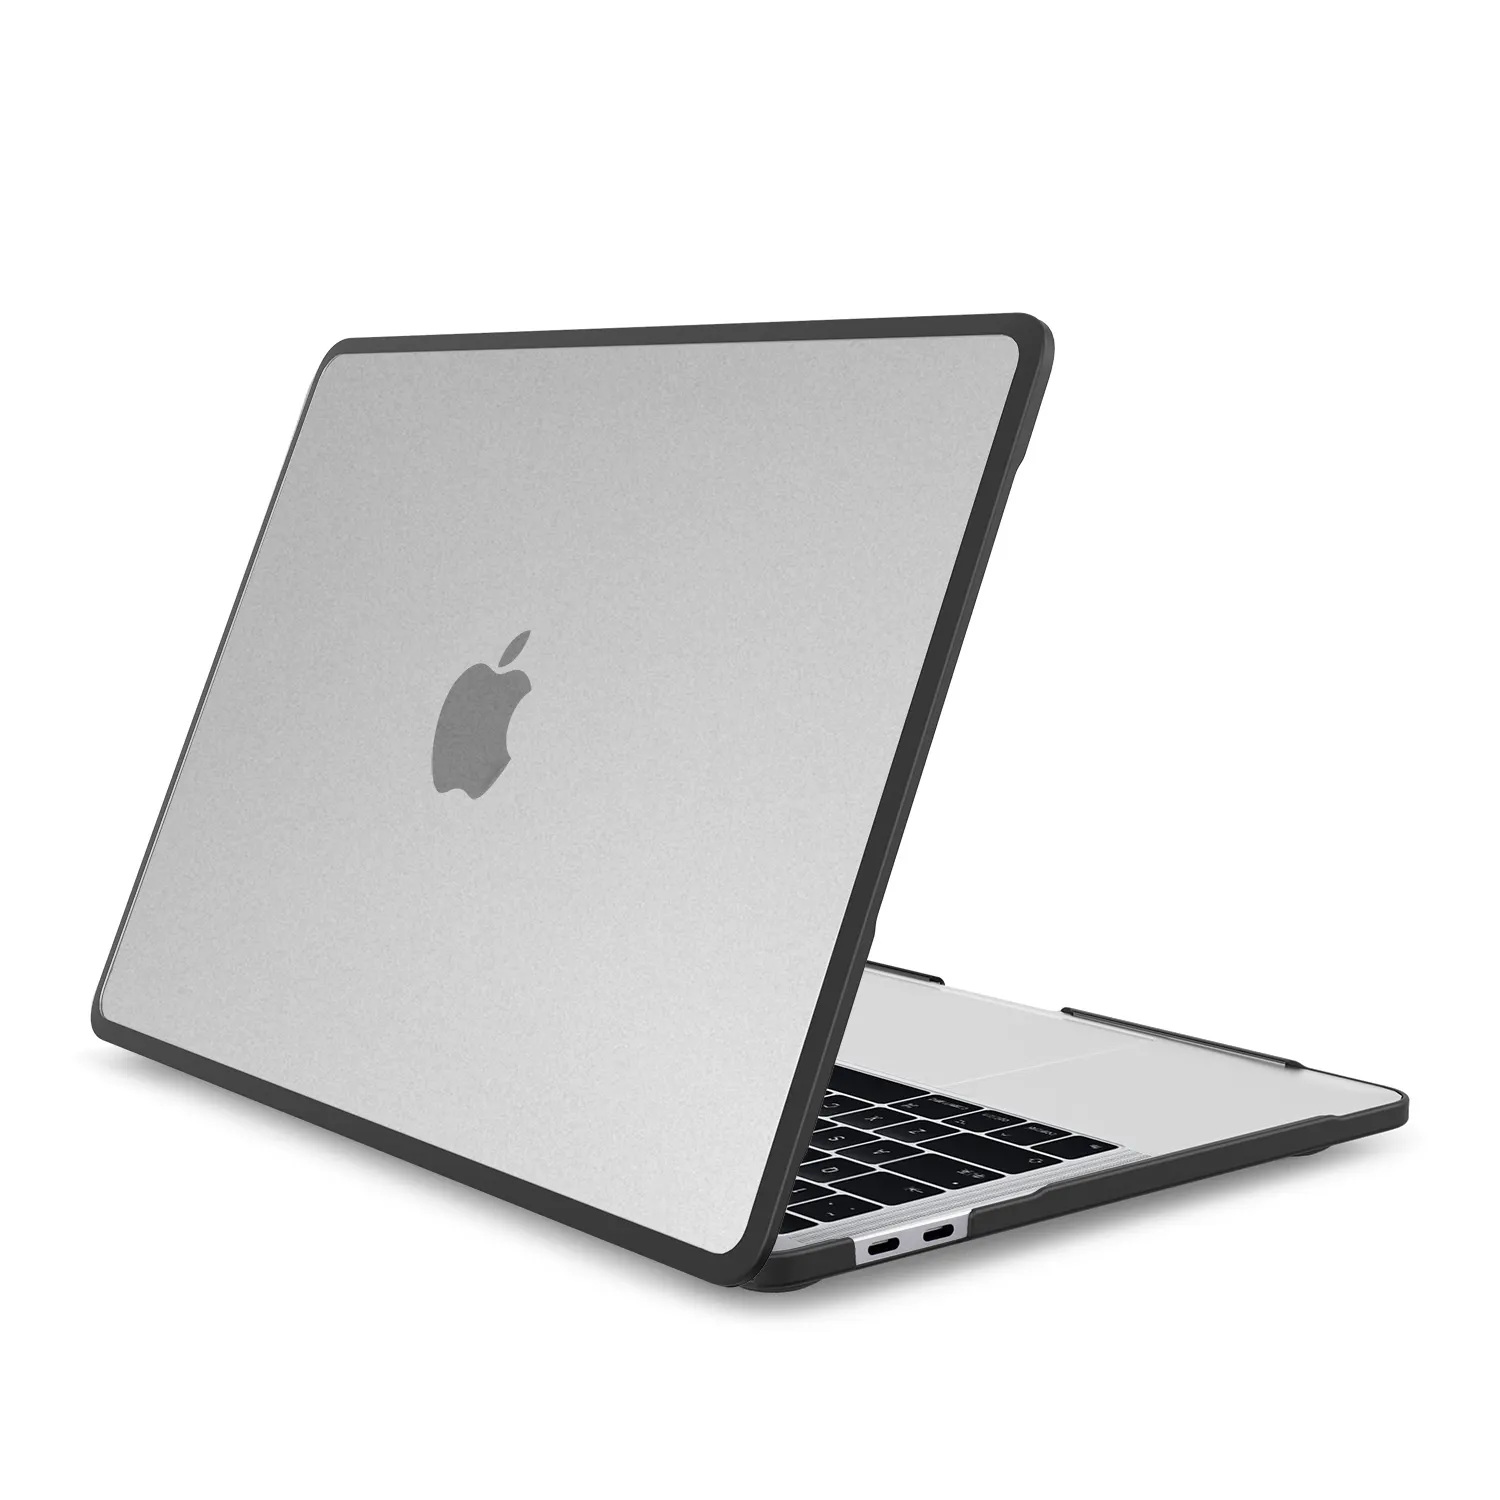 Casing Proteksi Penuh Label Pribadi Terbaru Casing PC Matte Keras Hibrida Ramping Tahan Guncangan untuk Macbook Air Pro 13 14 16